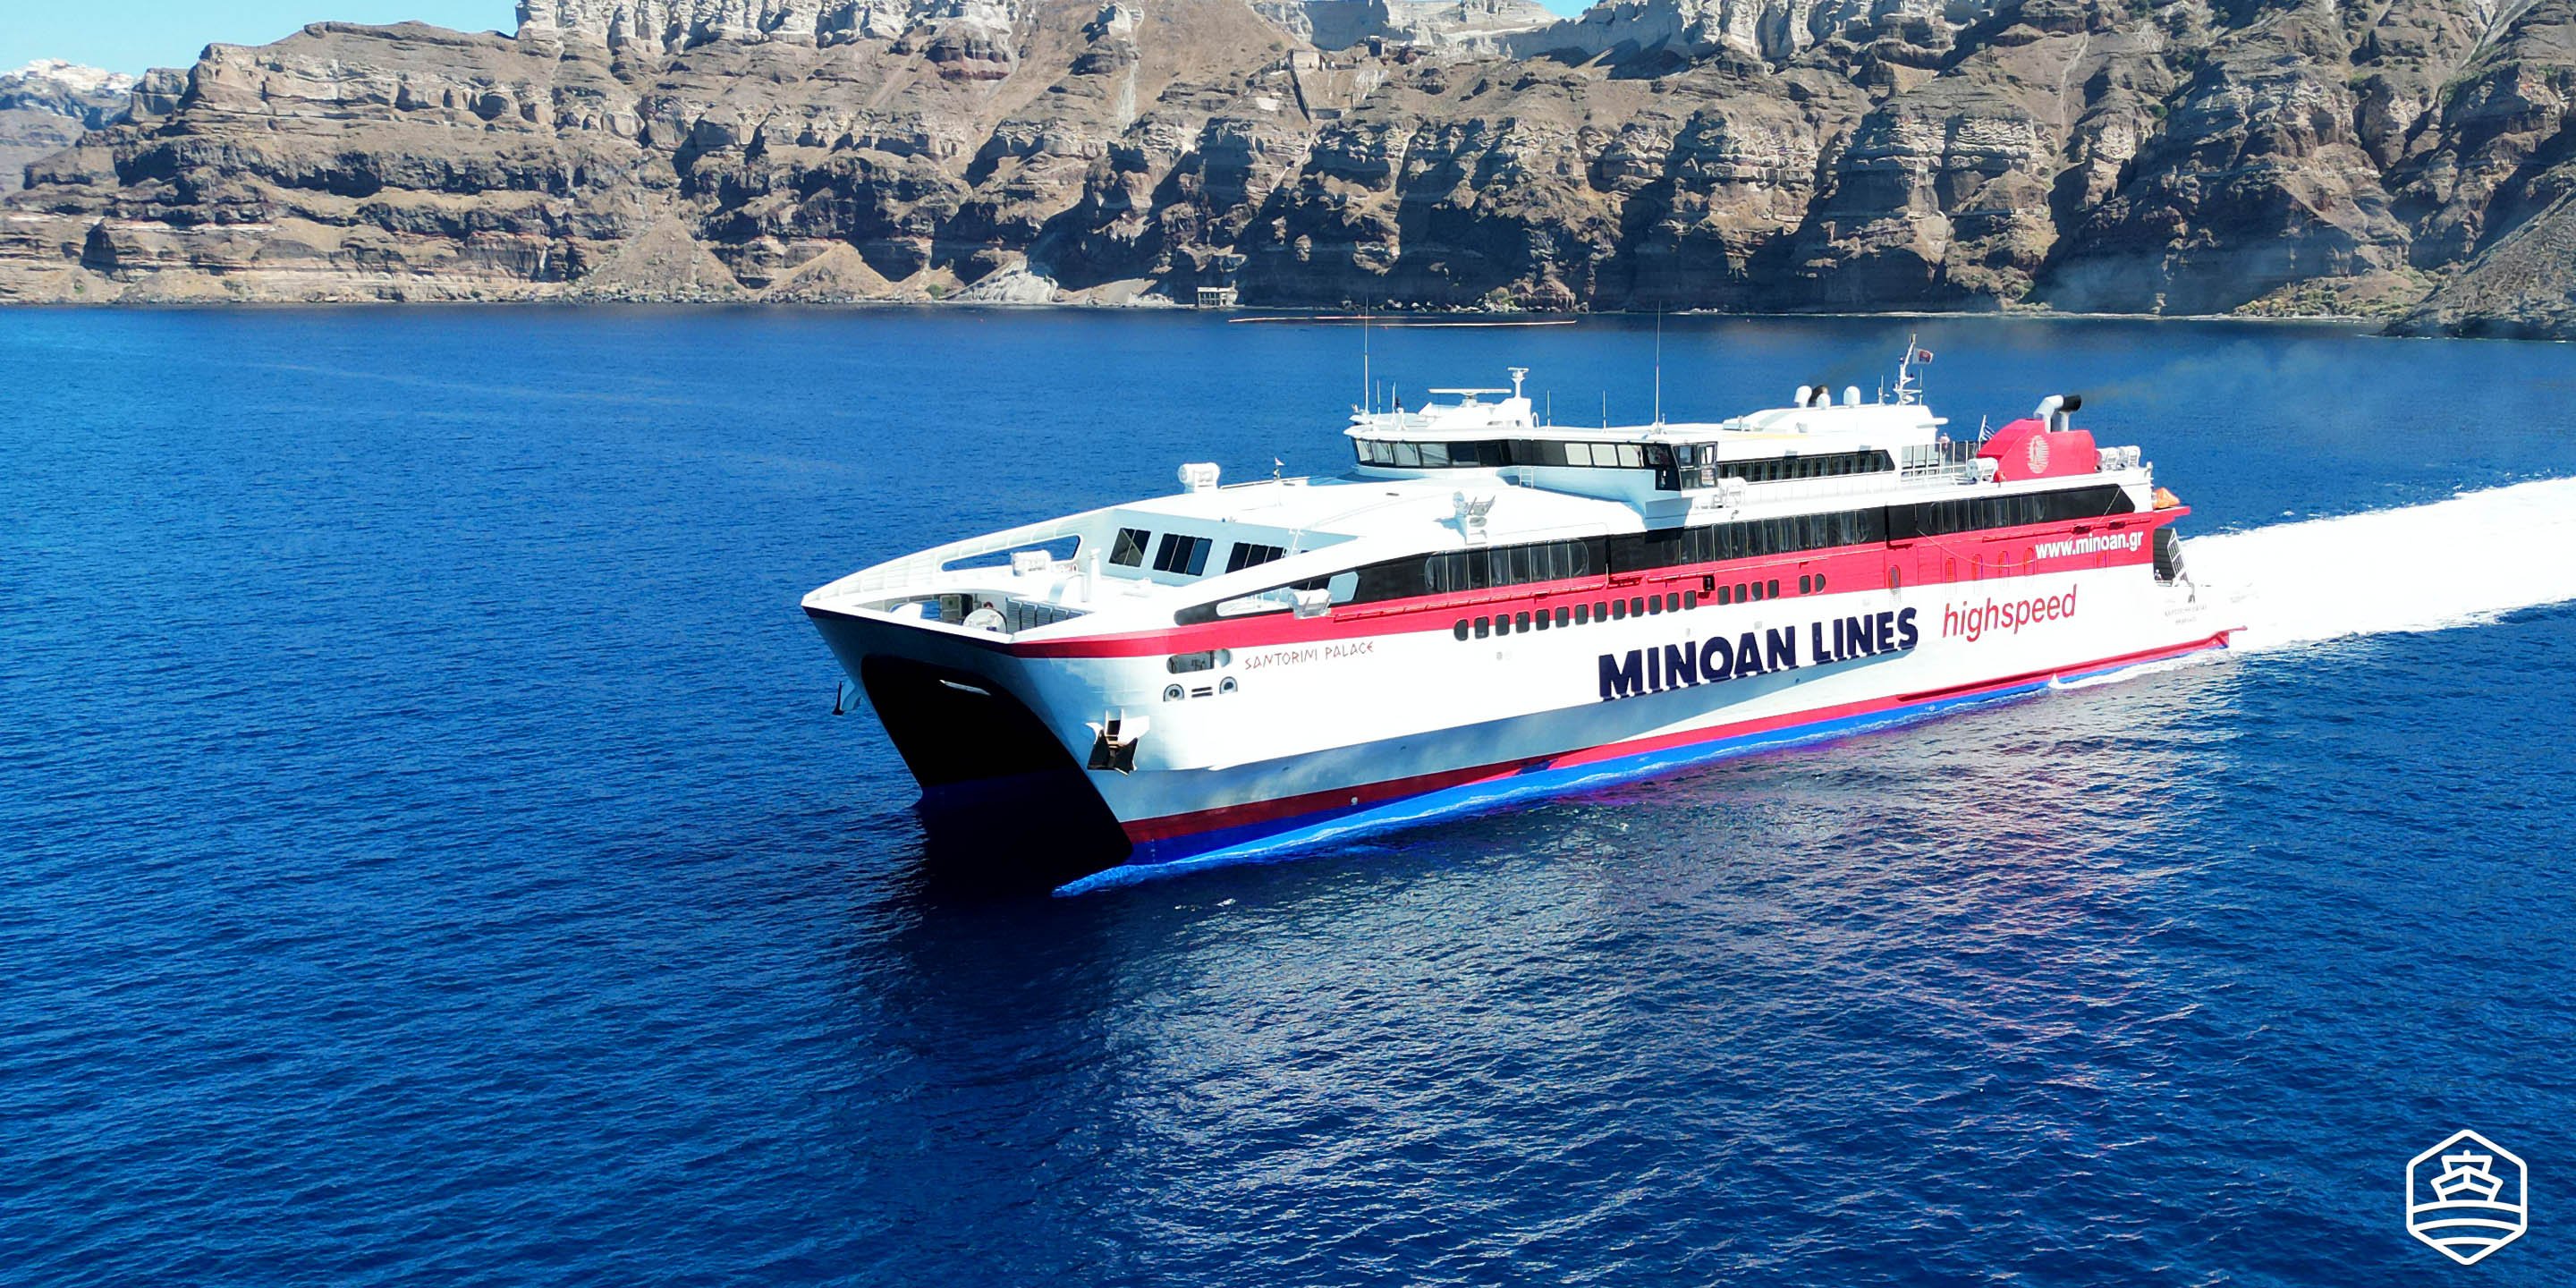 Το ταχύπλοο πλοίο Santorini Palace of Minoan Lines εκτελεί το δρομολόγιο από Σαντορίνη προς Κρήτη Ηράκλειο